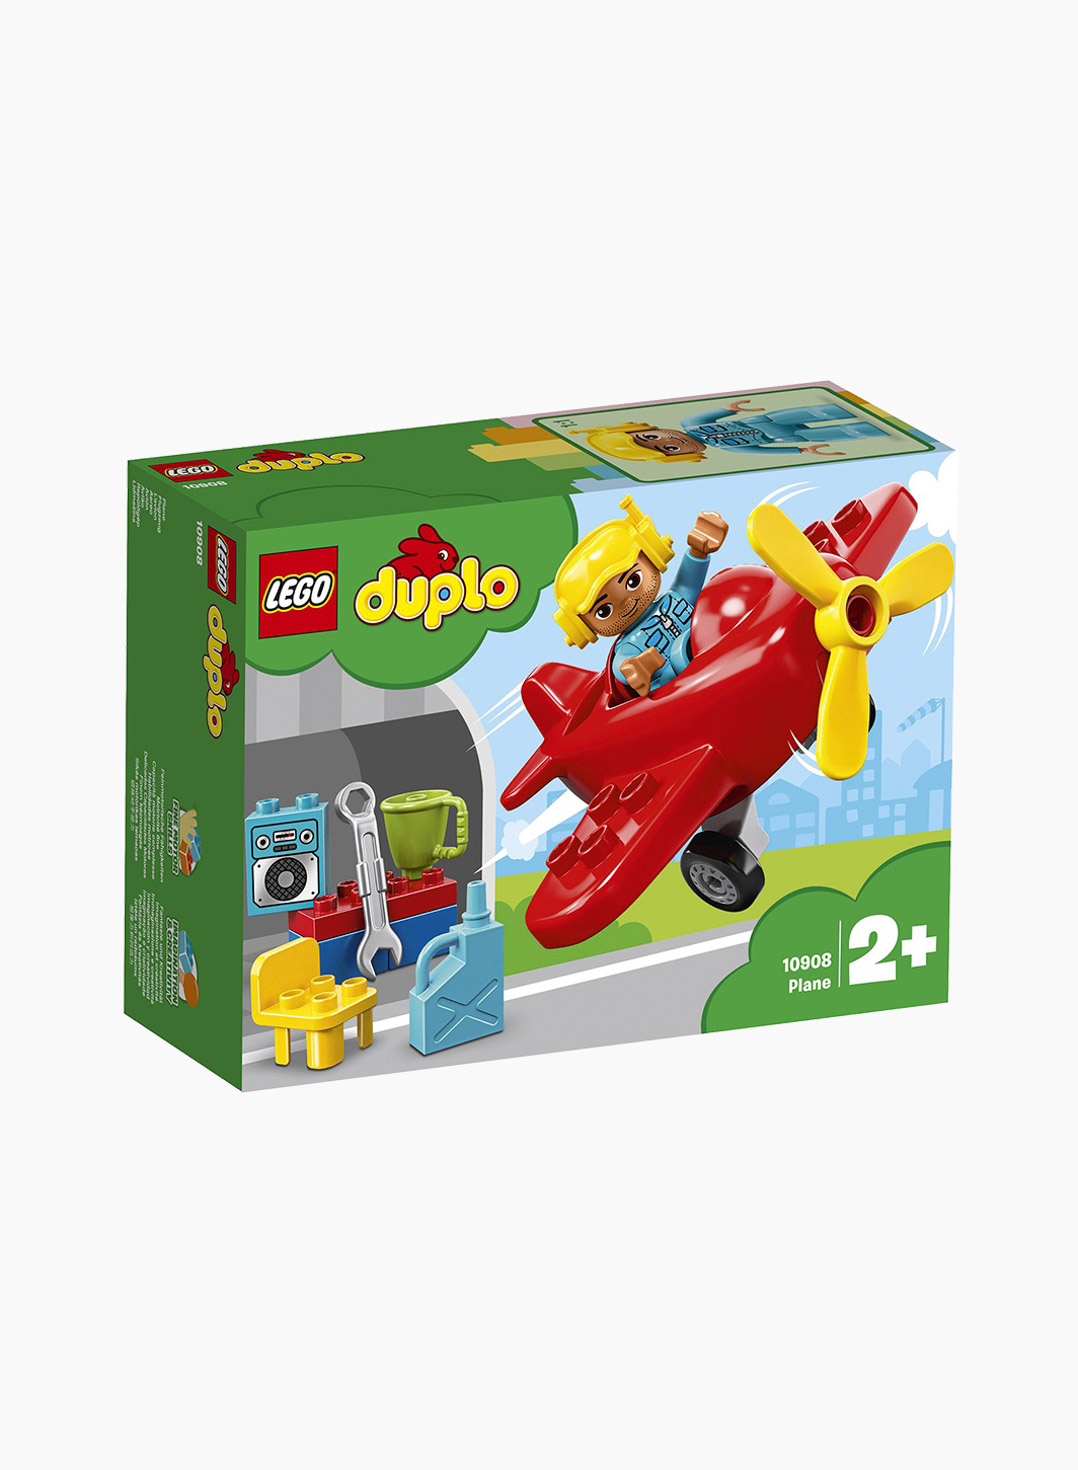 Lego Duplo Constructor Plane